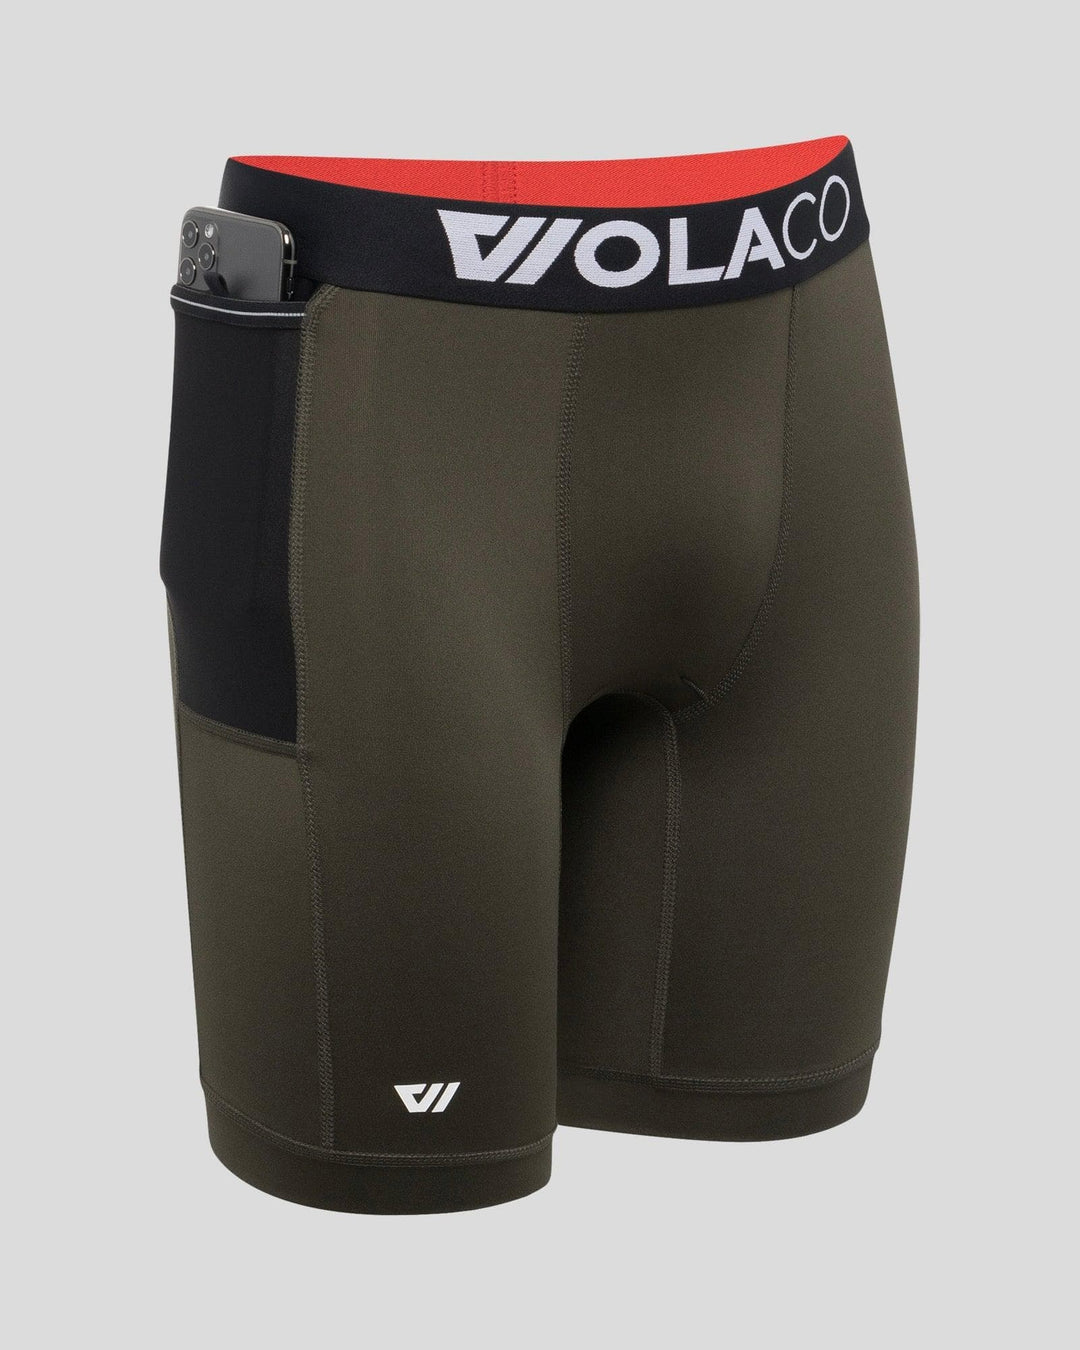 Sports Underwear for Men, Running Boxers